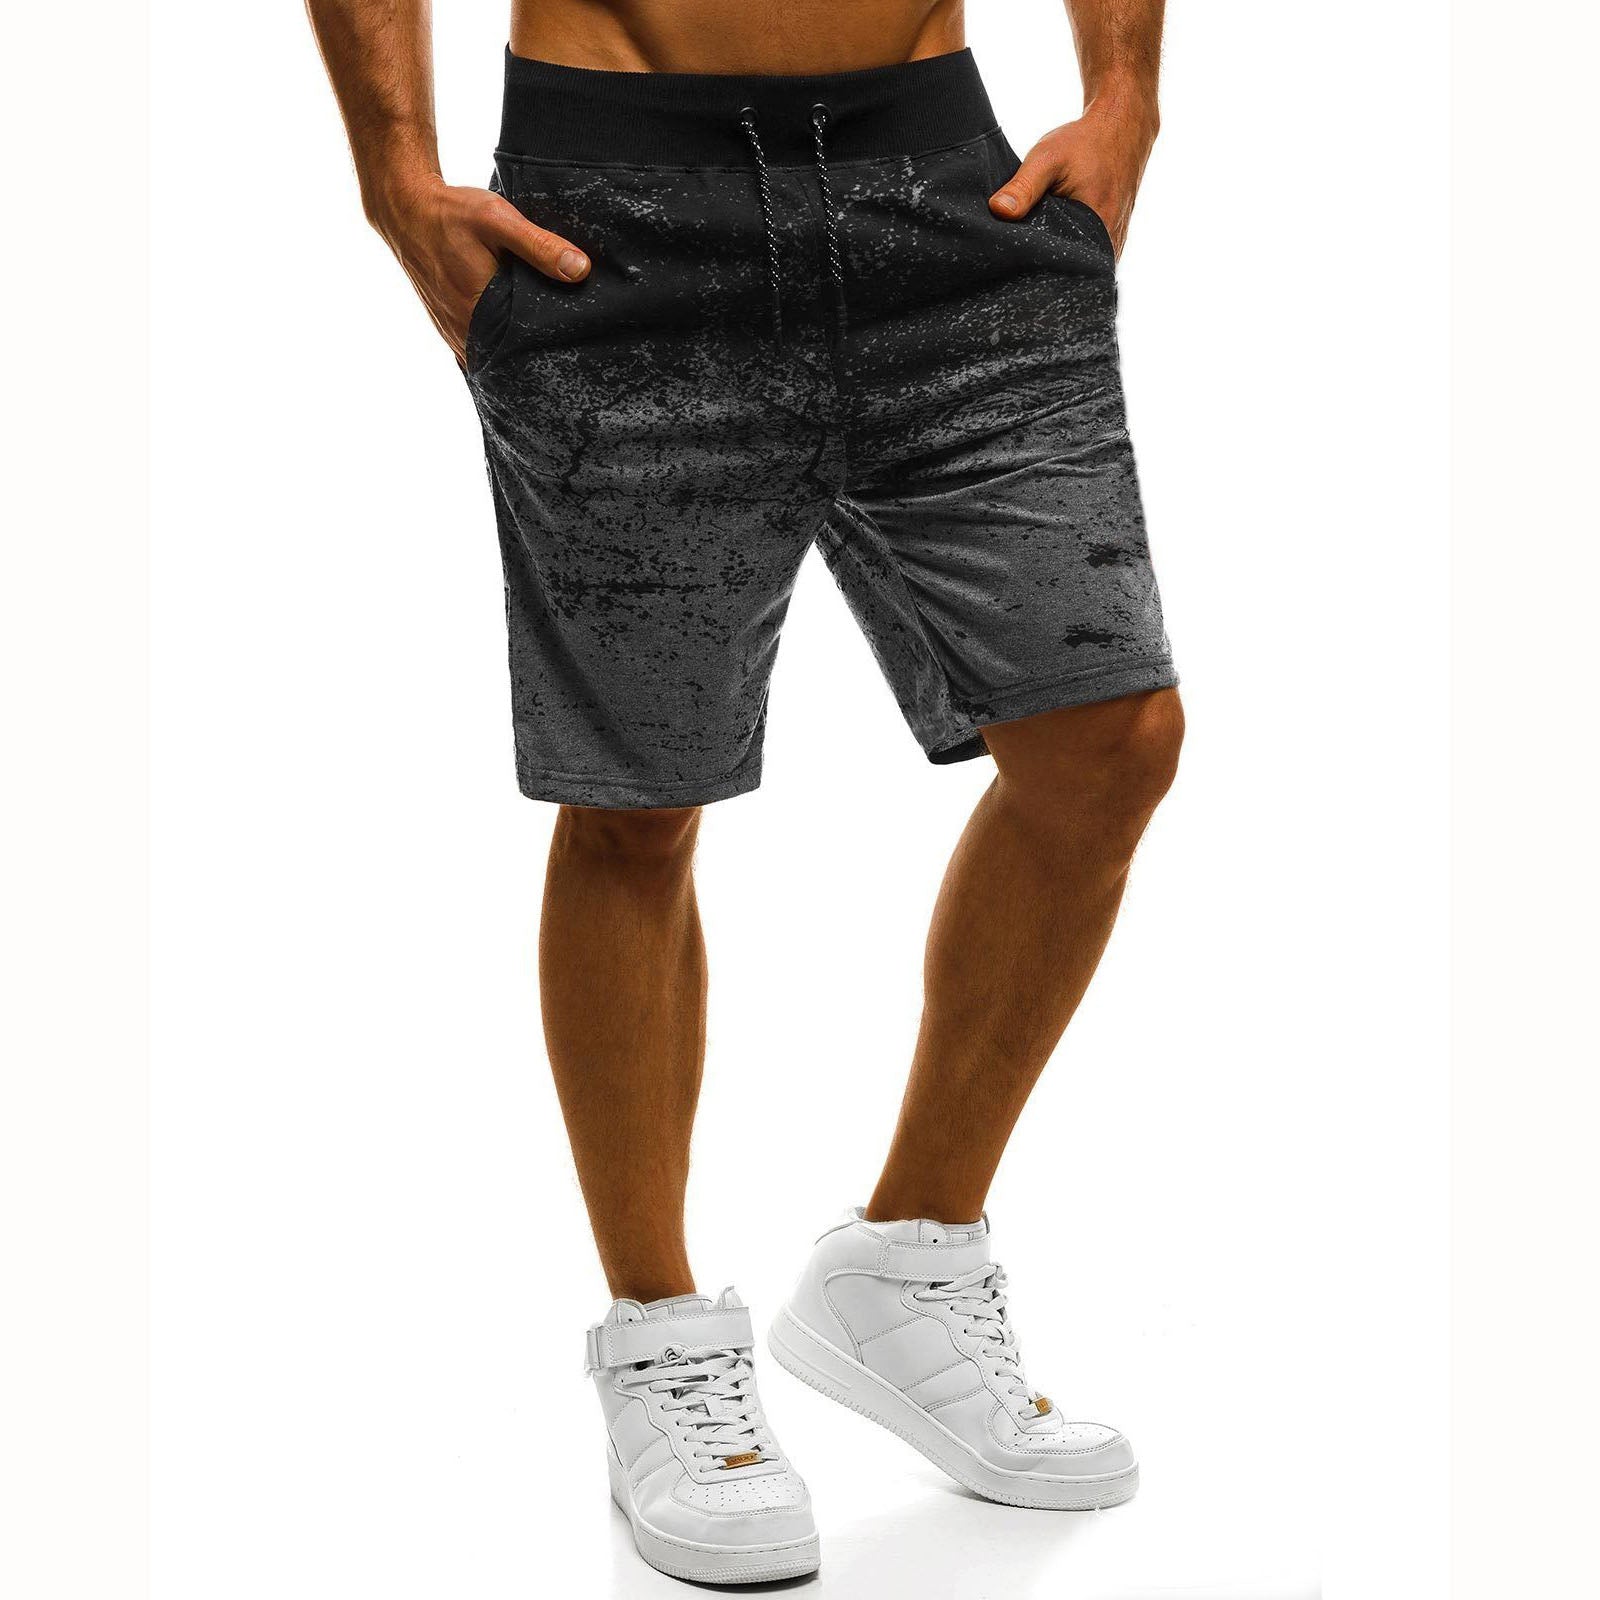 Pantaloni scurti moderni pentru barbati, diferite optiuni de culoare, pentru activitati sportive